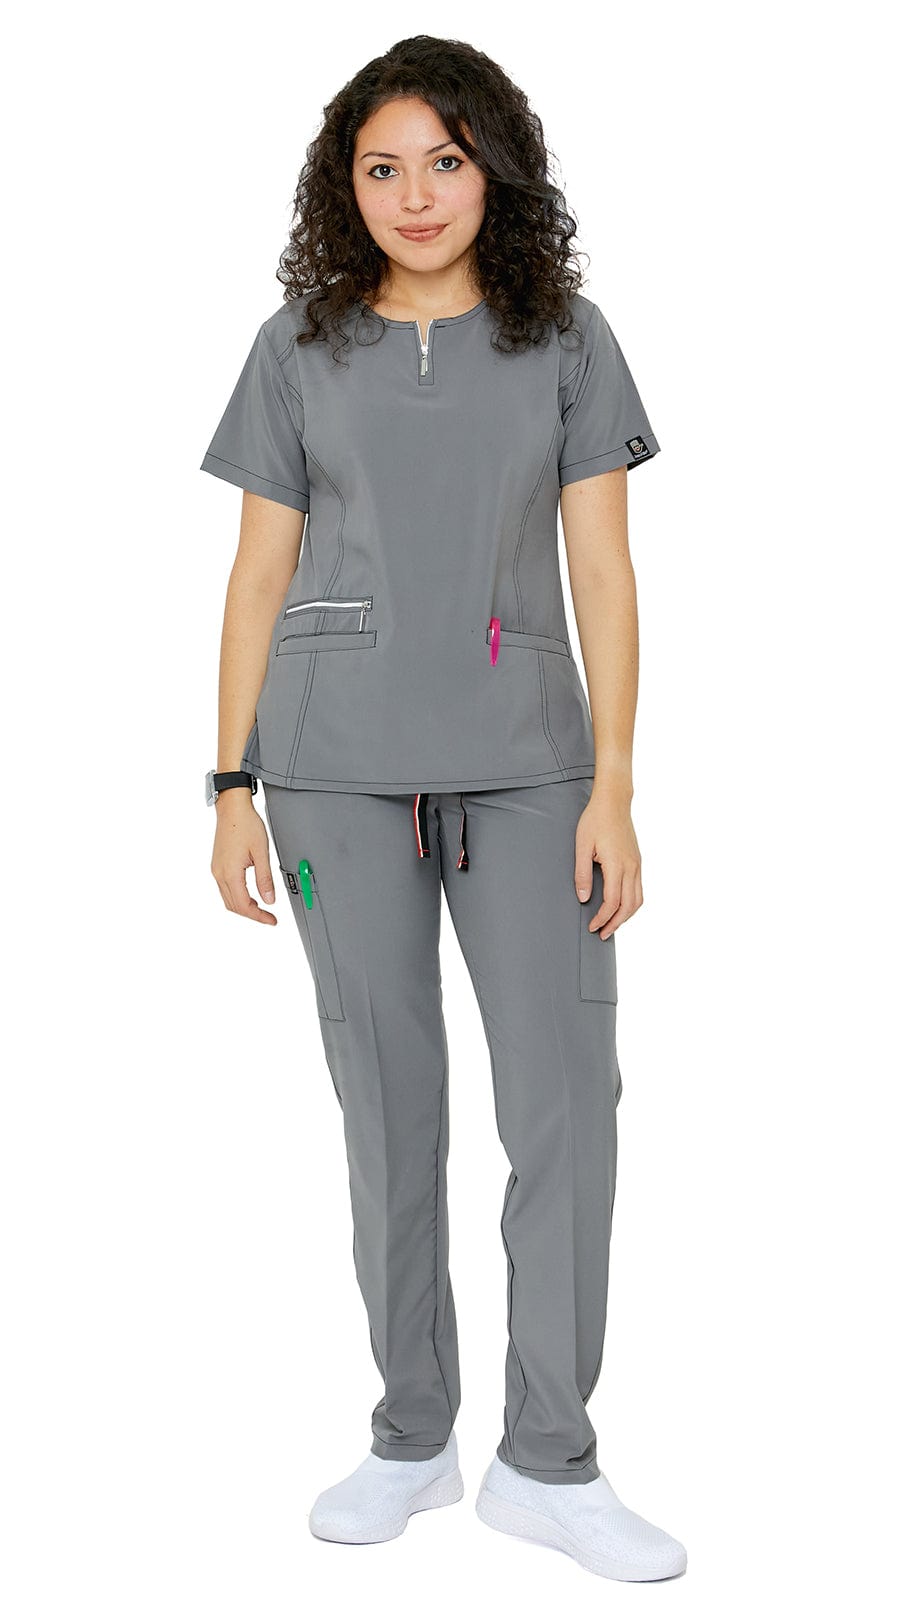 Dress A Med Women's Soft Stretch Silver Zipper Uniform Scrubs